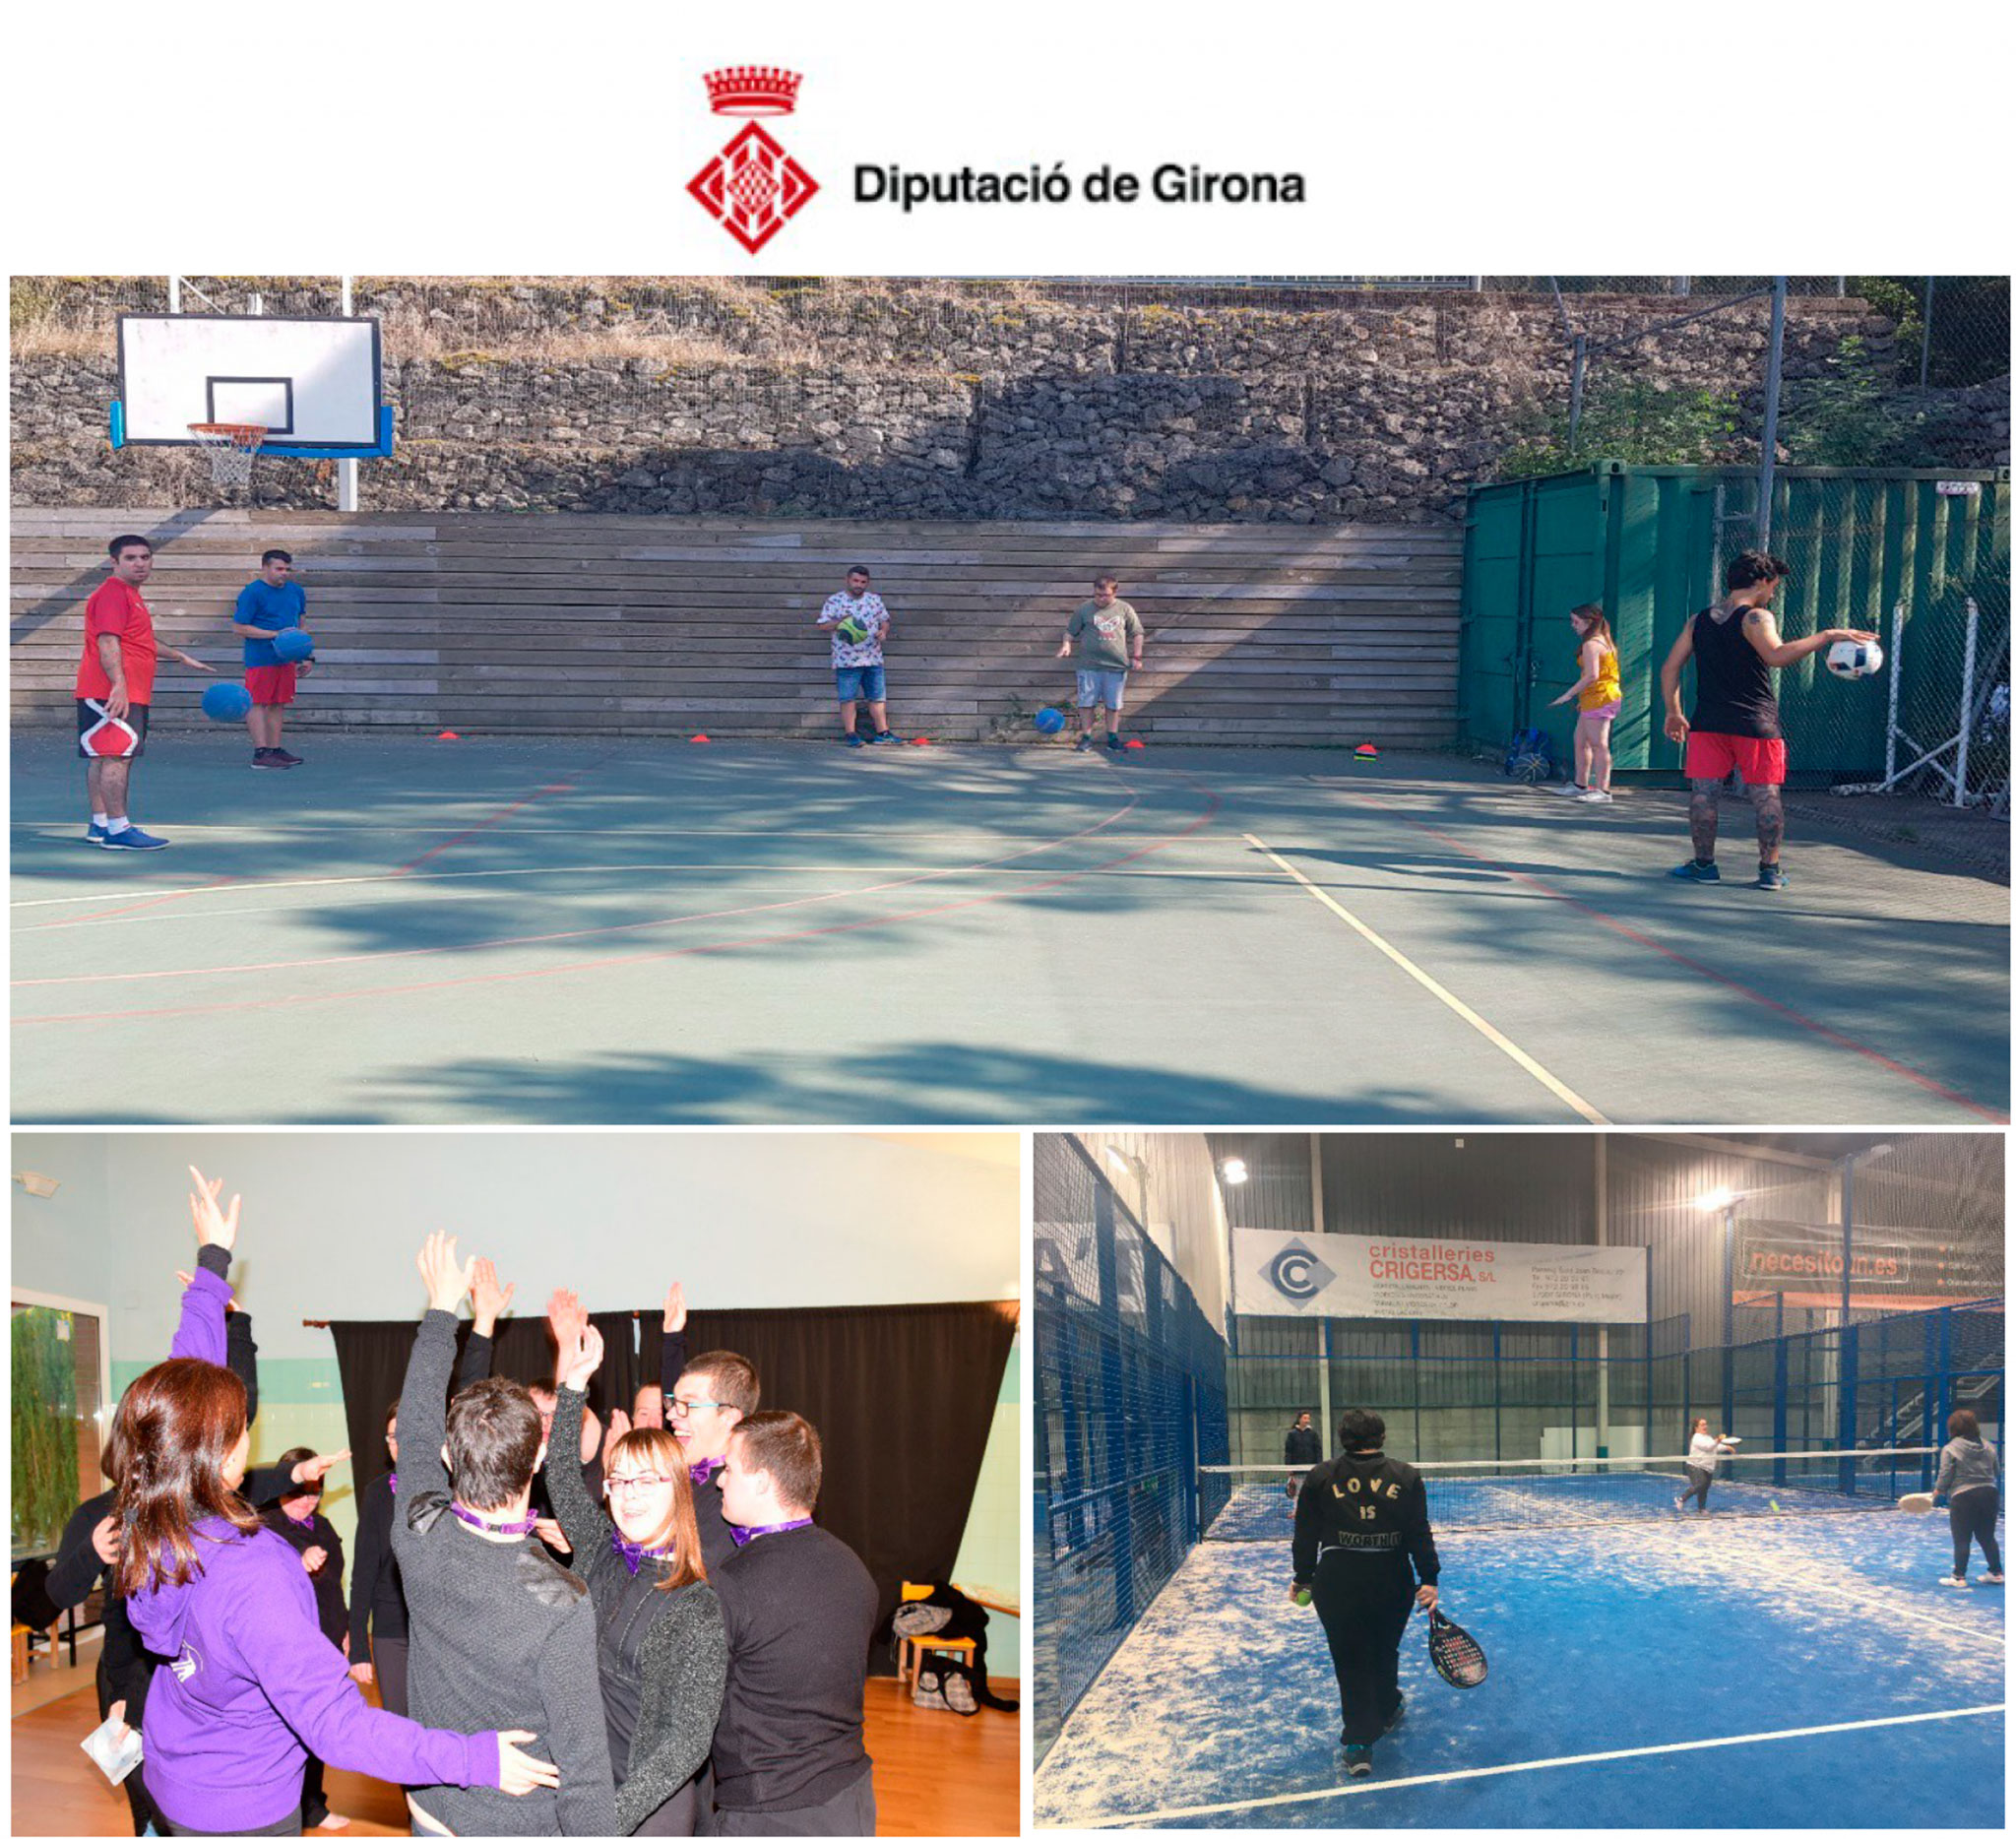 El proyecto “En Forma” 2019-2020 ha contado con la colaboración de la Diputación de Girona